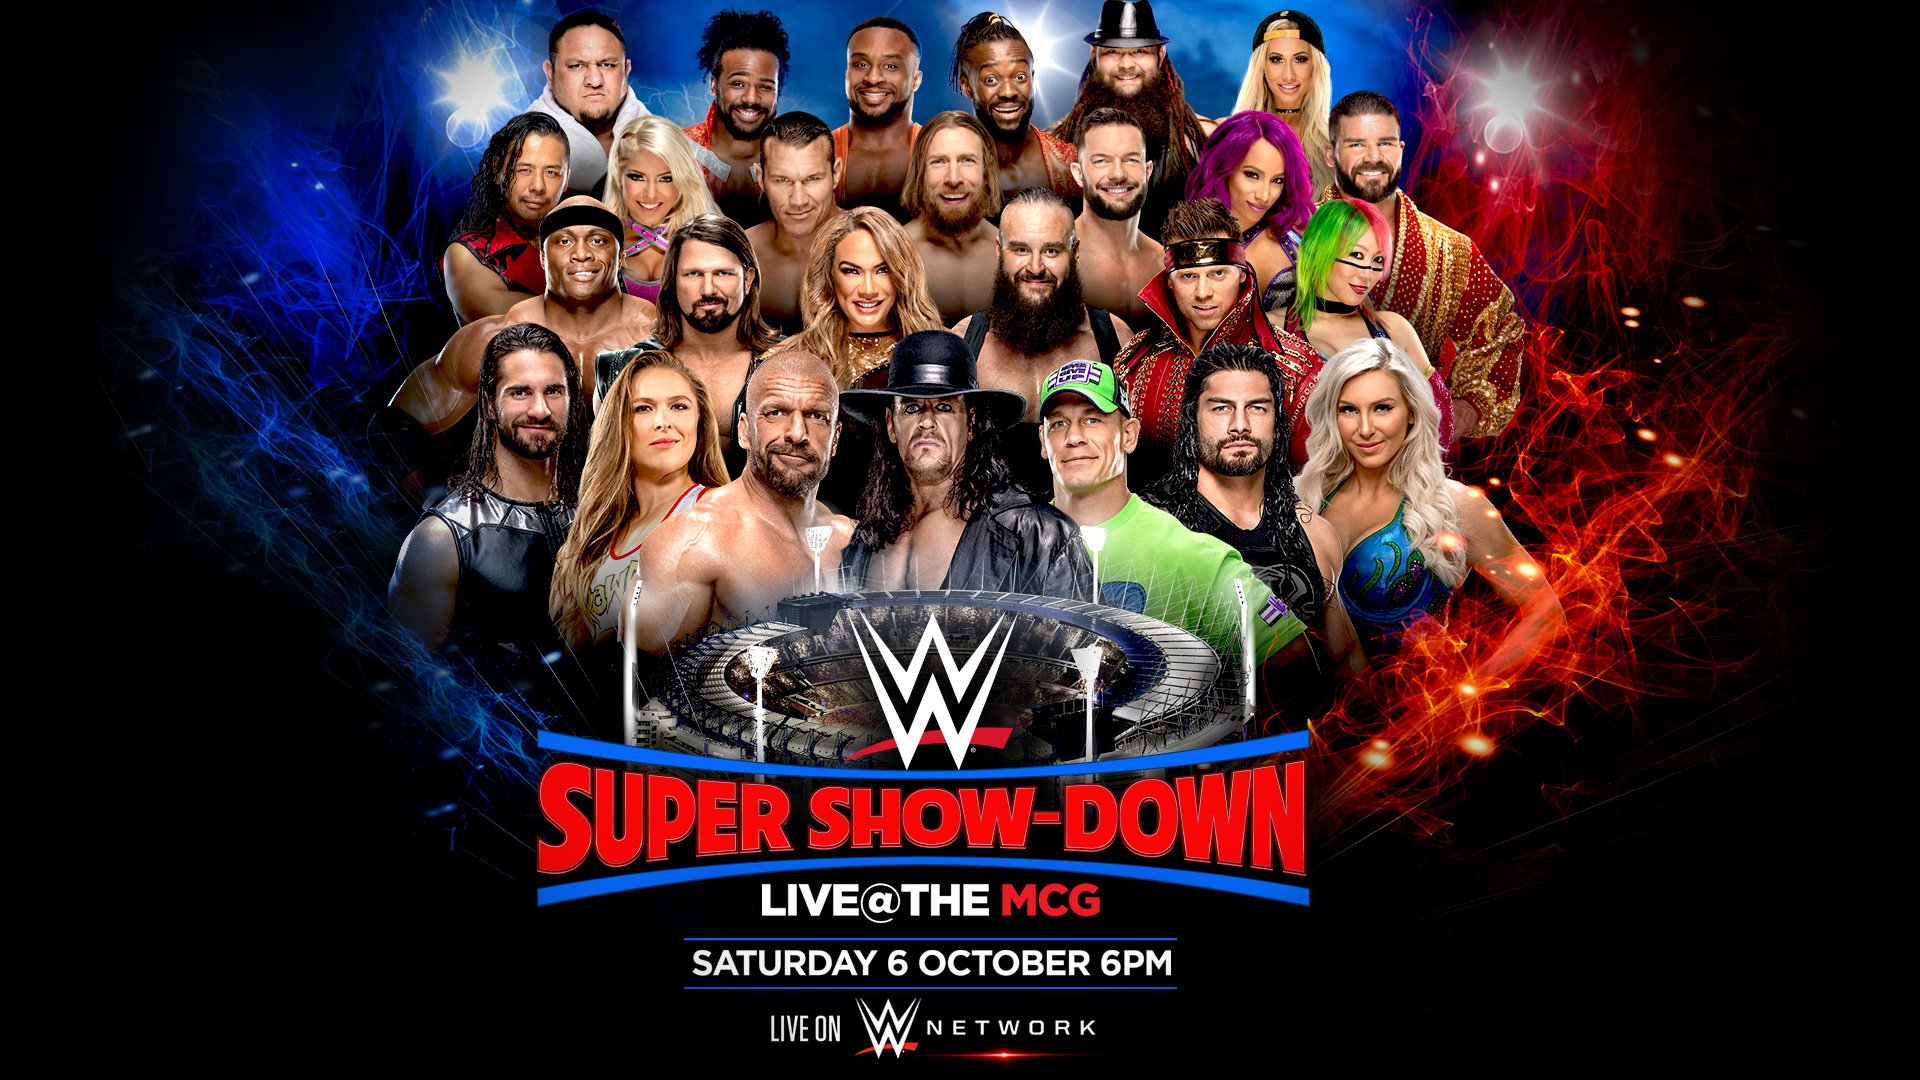 WWE Super Showdown results Triple H, Undertaker continue rivalry